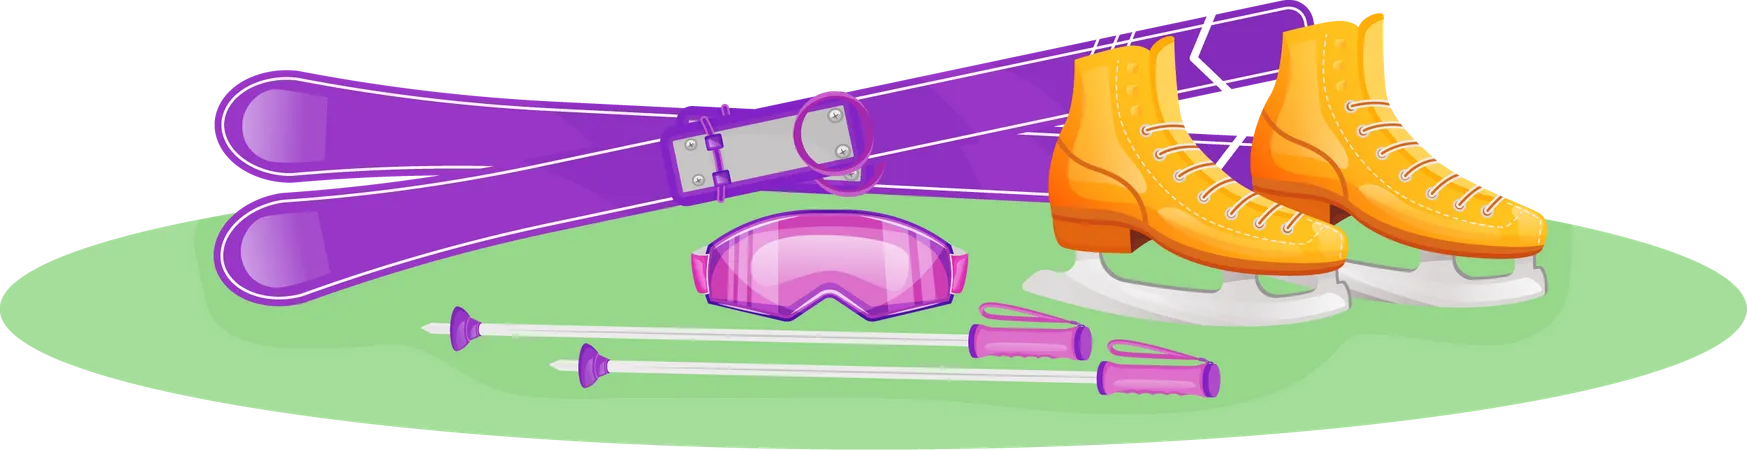 Skiing kit Illustration